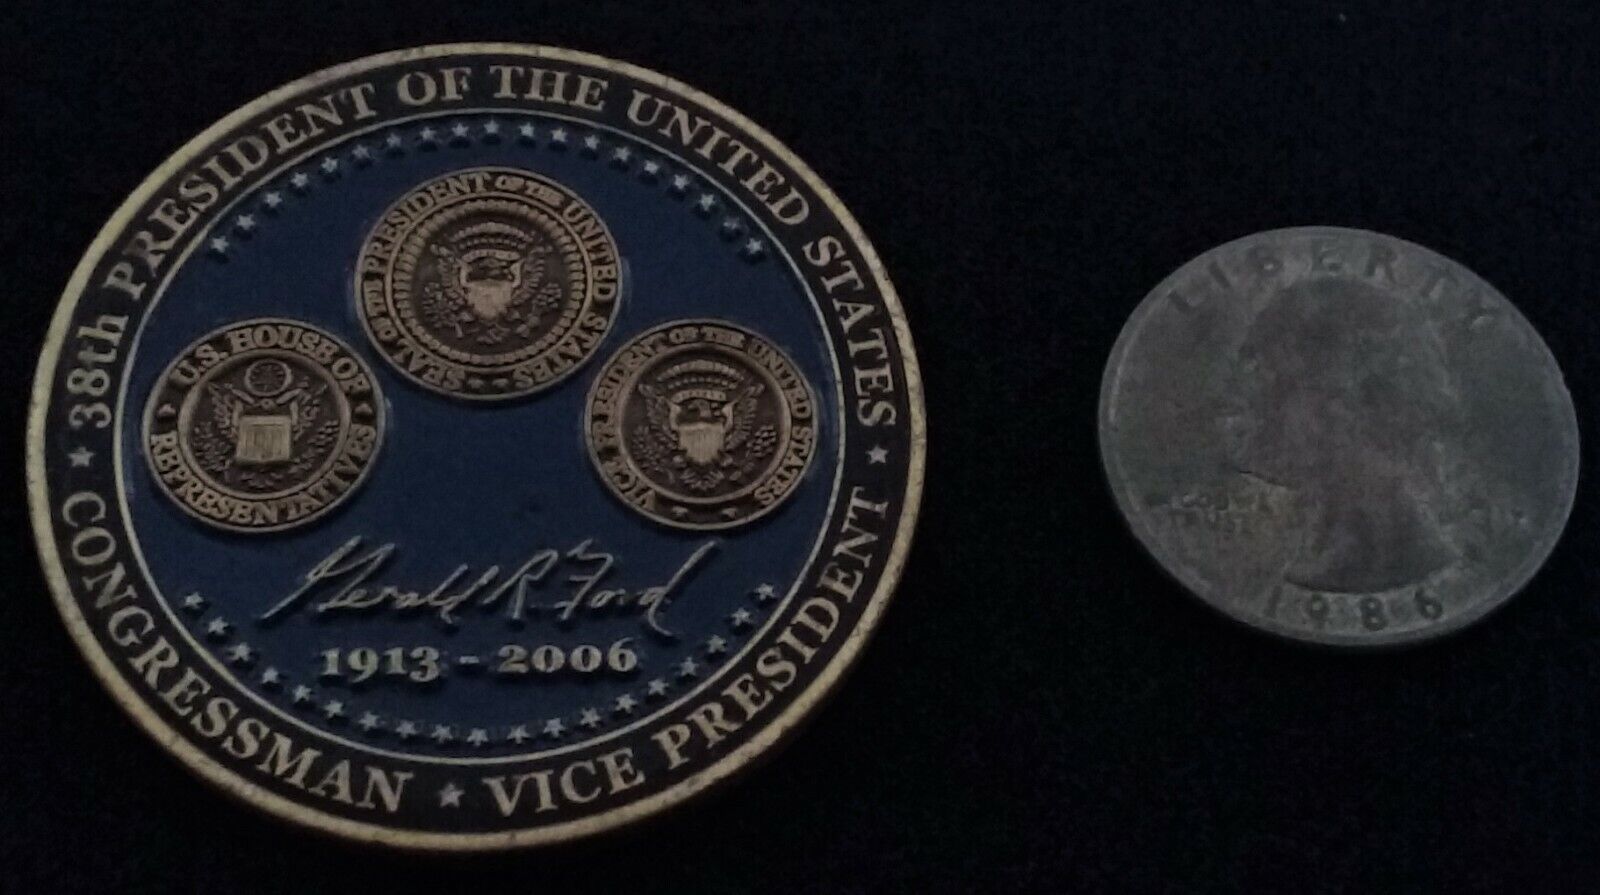 RARE President Ford Foundation White House Congress POTUS VPOTUS Challenge Coin